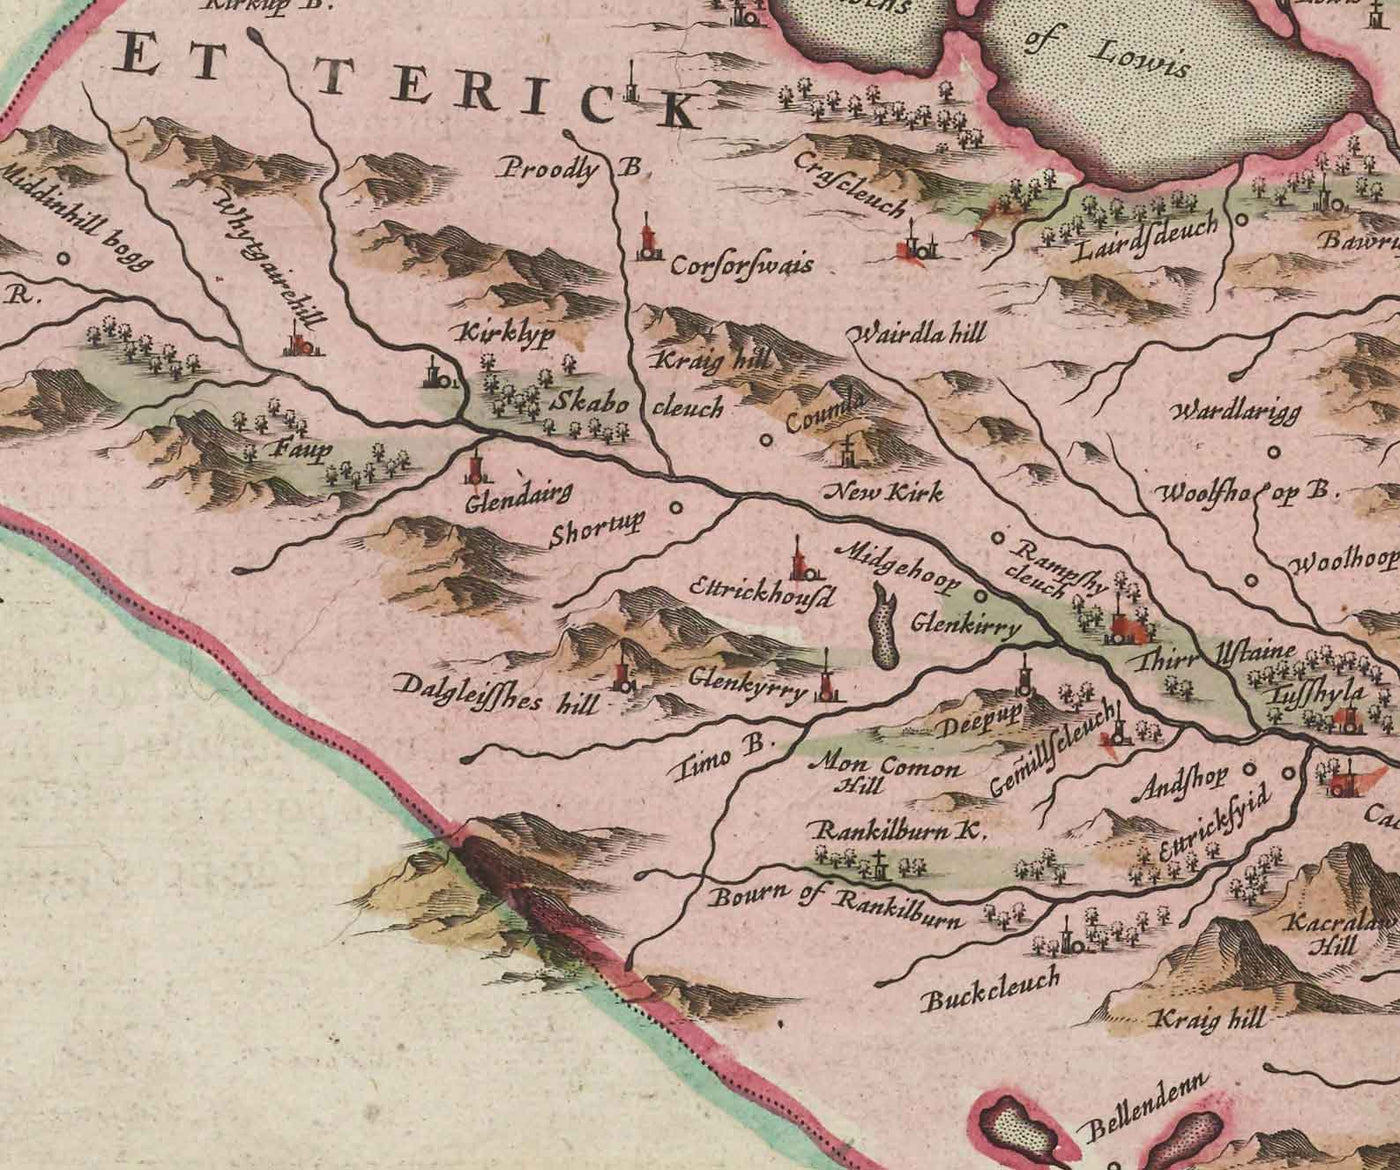 Old Map of Selkirkshire in 1665 by Joan Blaeu - Selkirk, Lindean, Darnick, River Tweed, Peebles